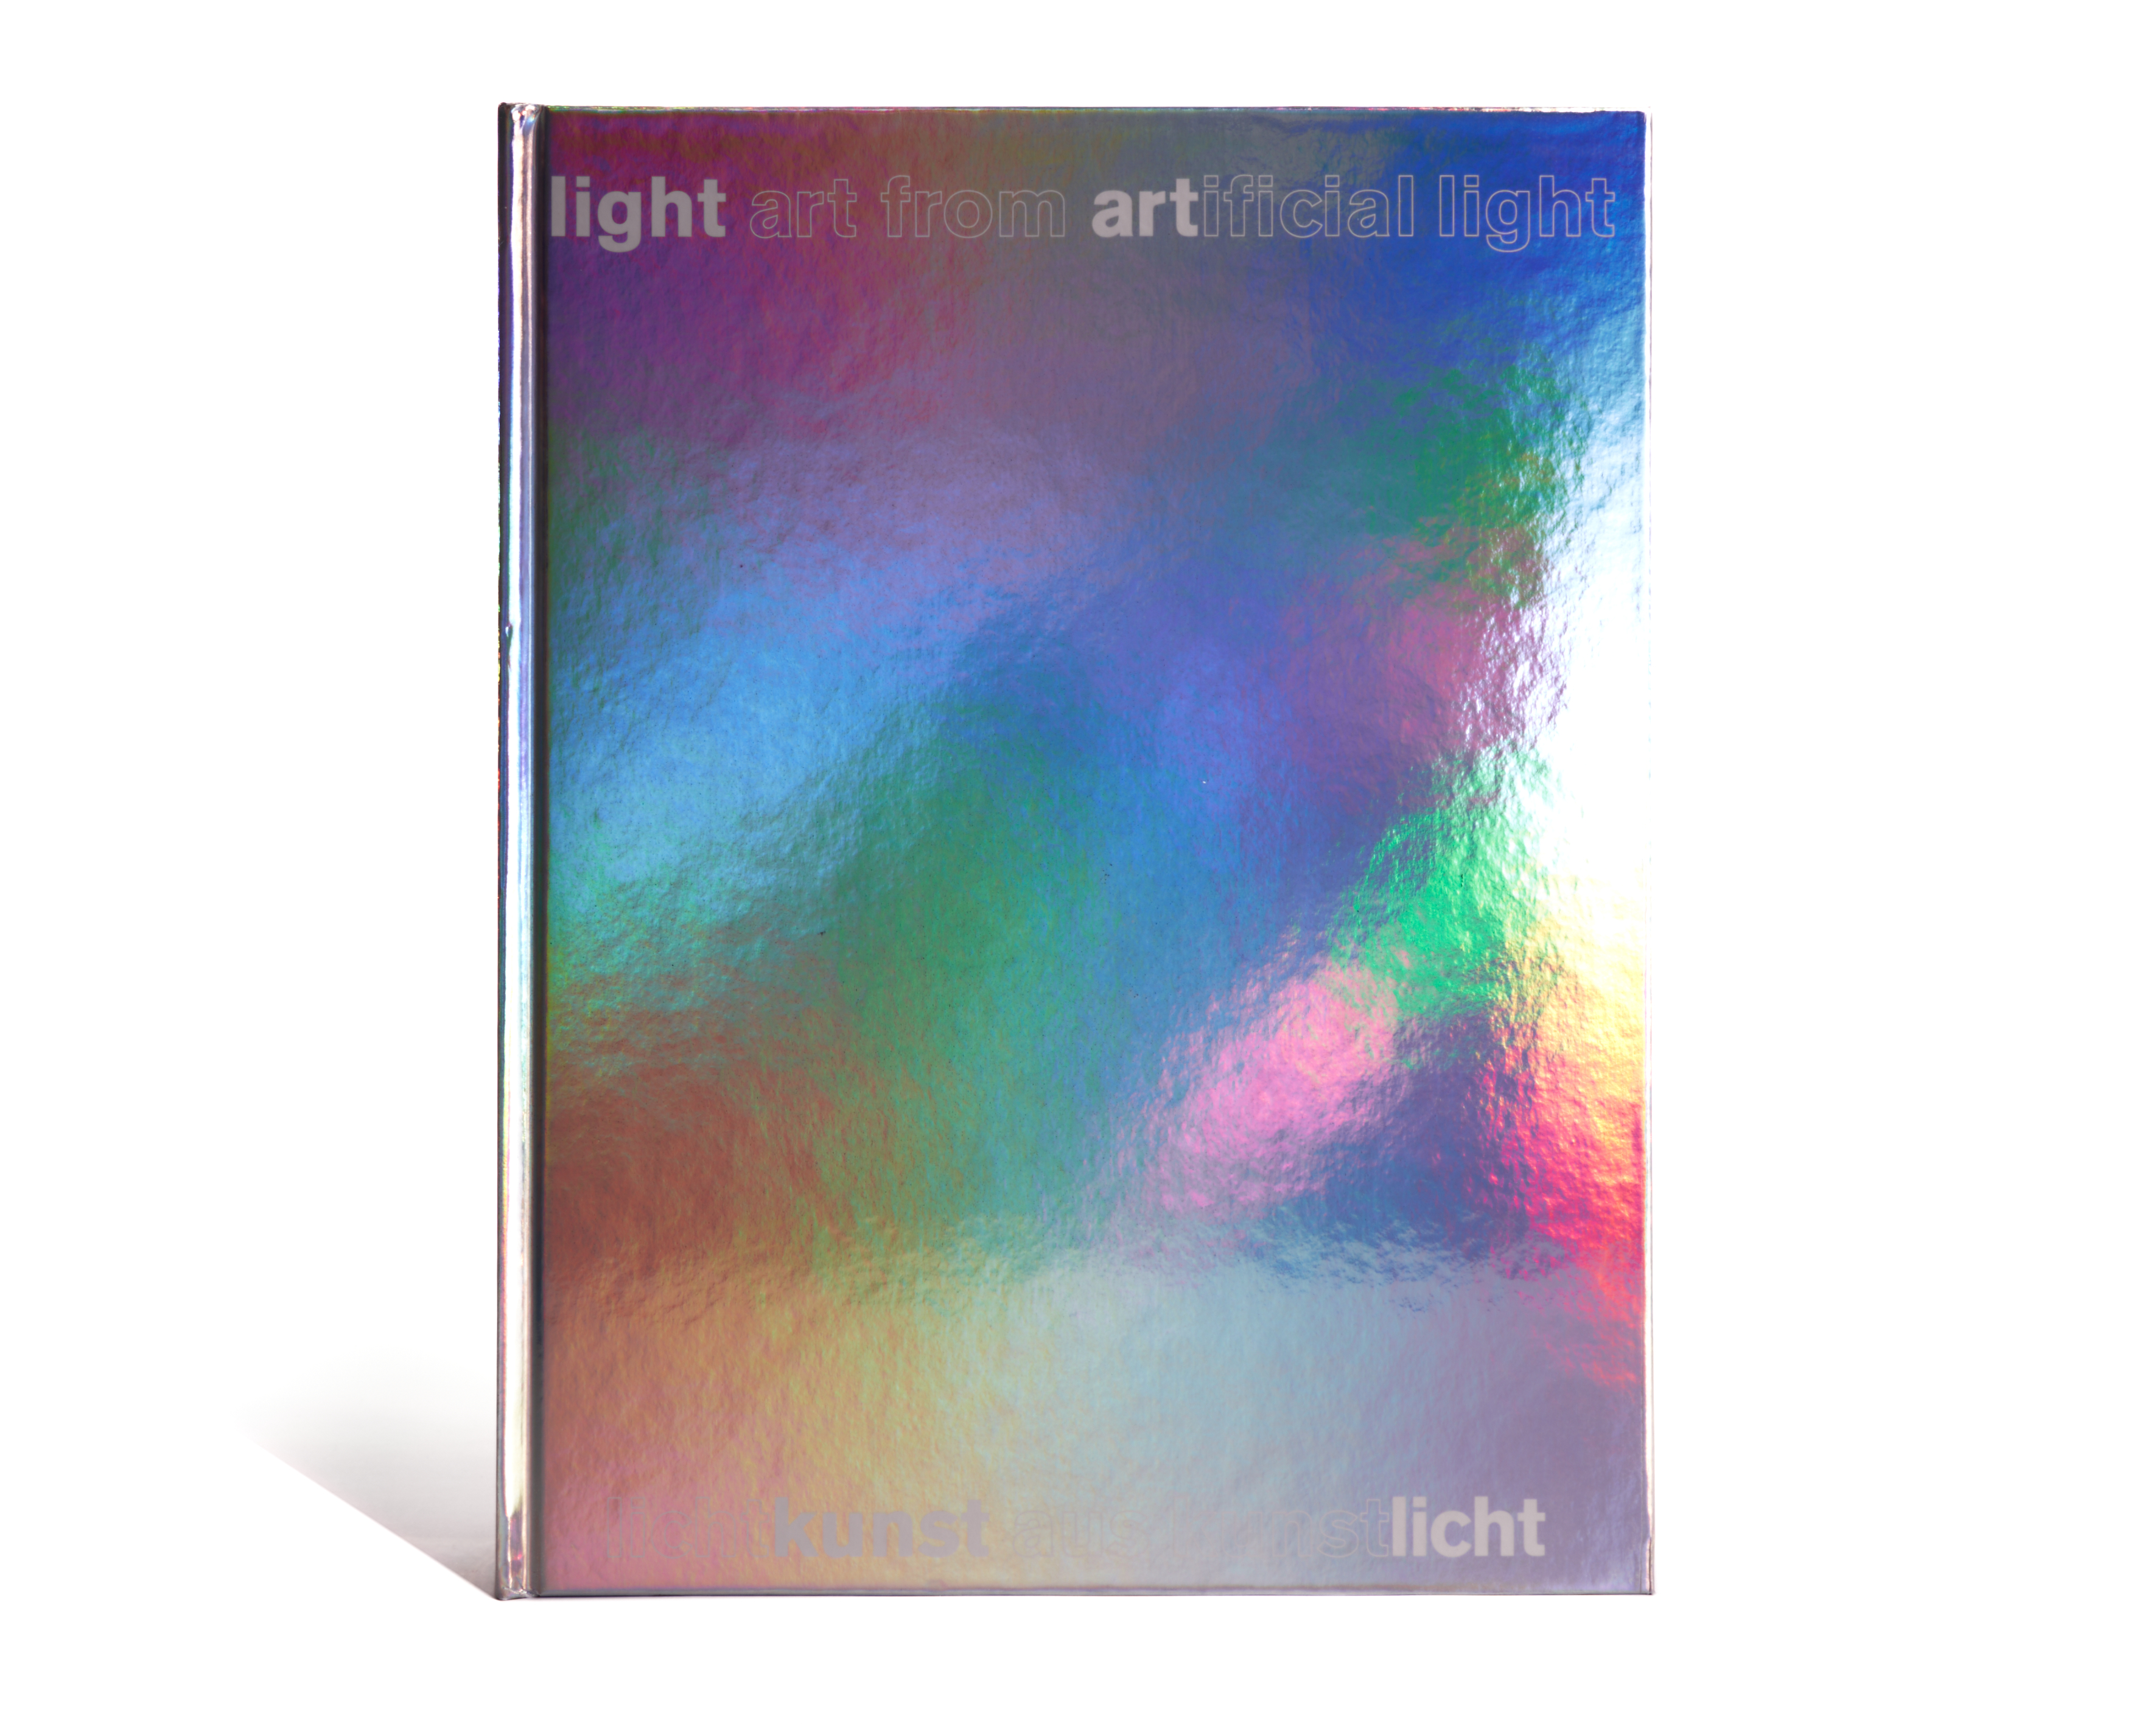 Lichtkunst aus Kunstlicht / Light Art from Artificial Light